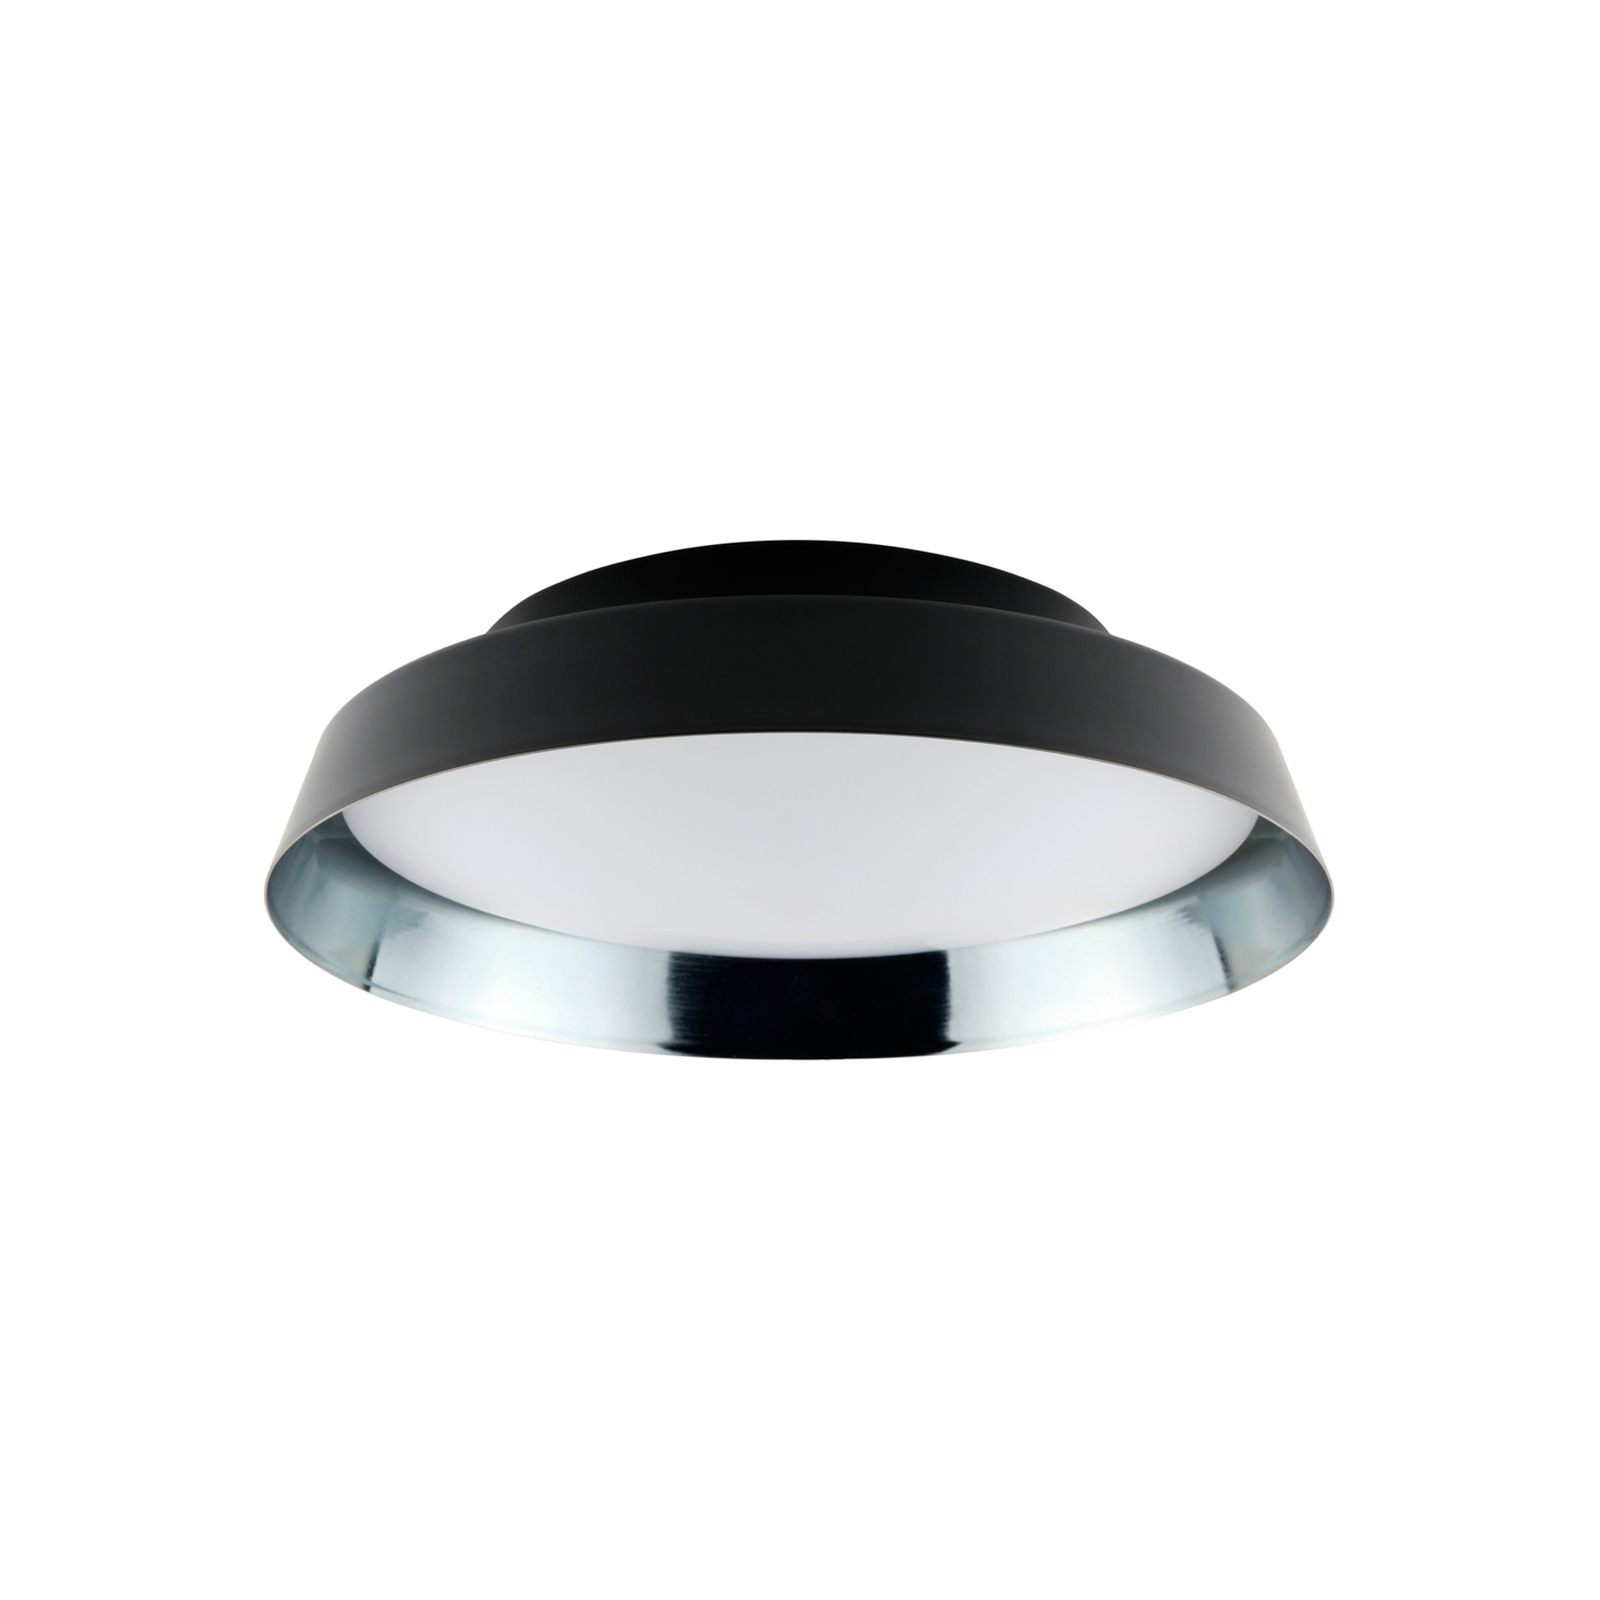 LED lubų šviestuvas Boop! Ø54cm juoda/mėlynai pilka